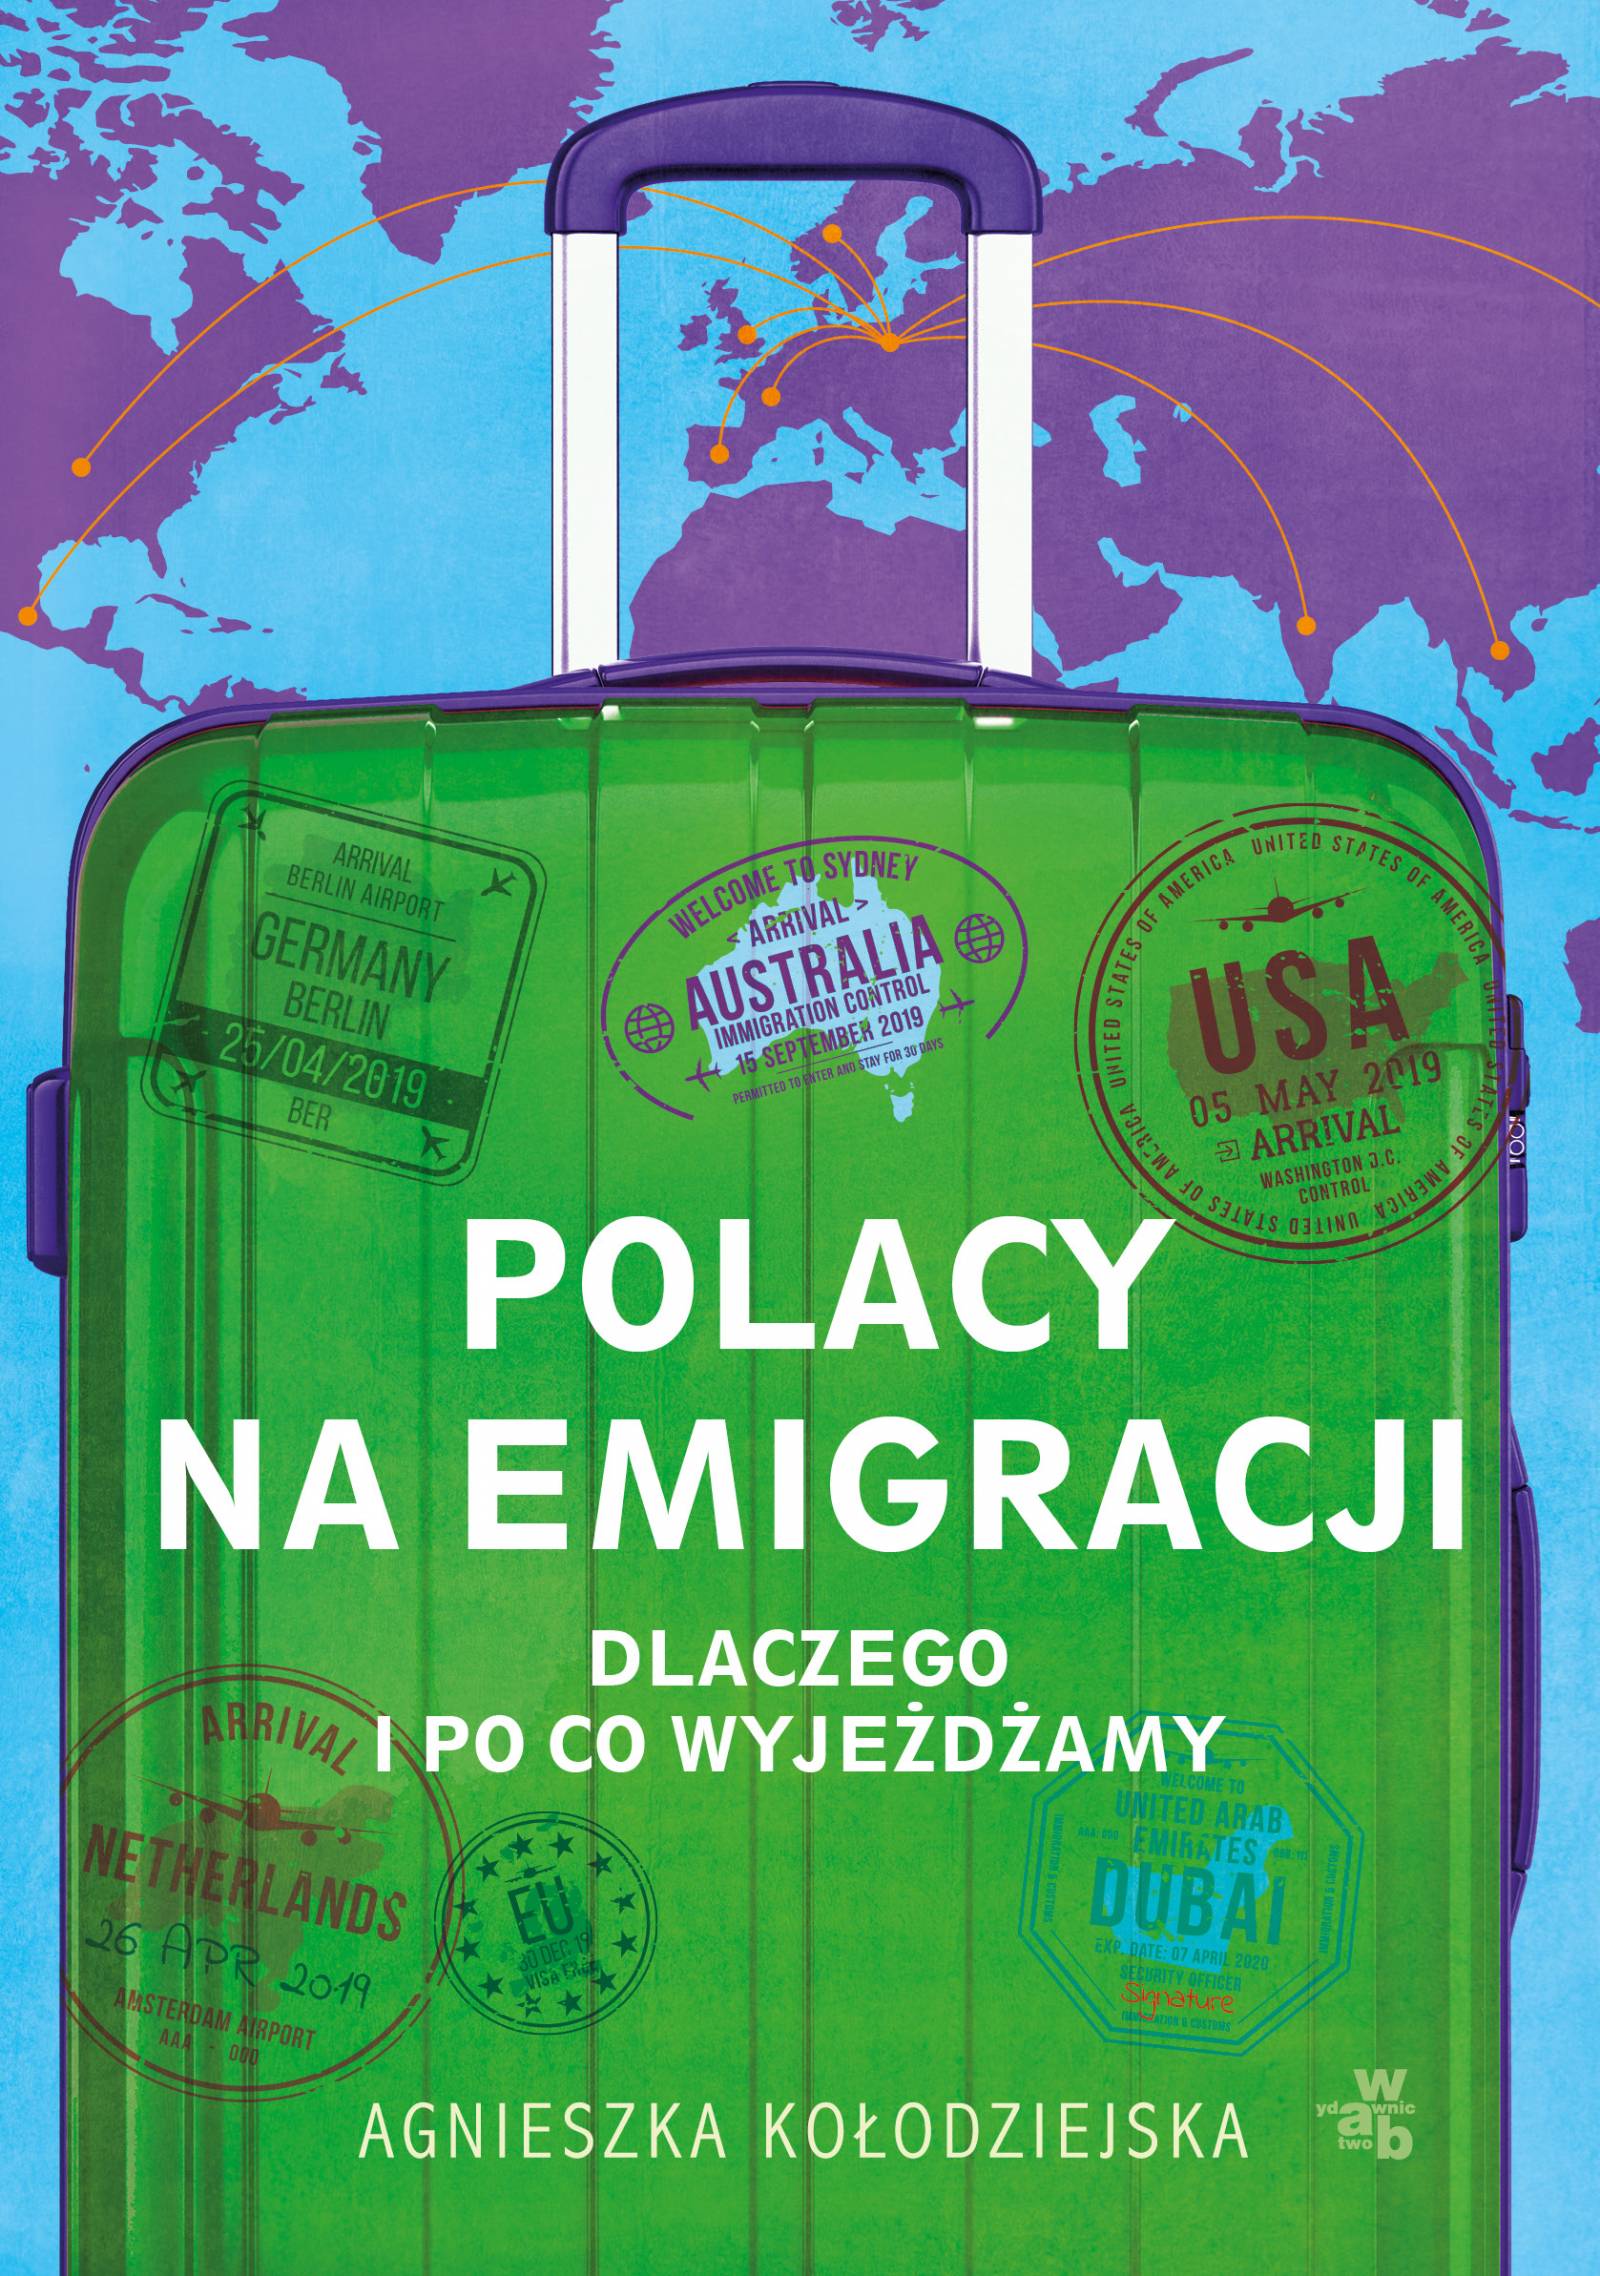 Polacy na emigracji, Agnieszka Kołodziejska, Wydawnictwo W.A.B.